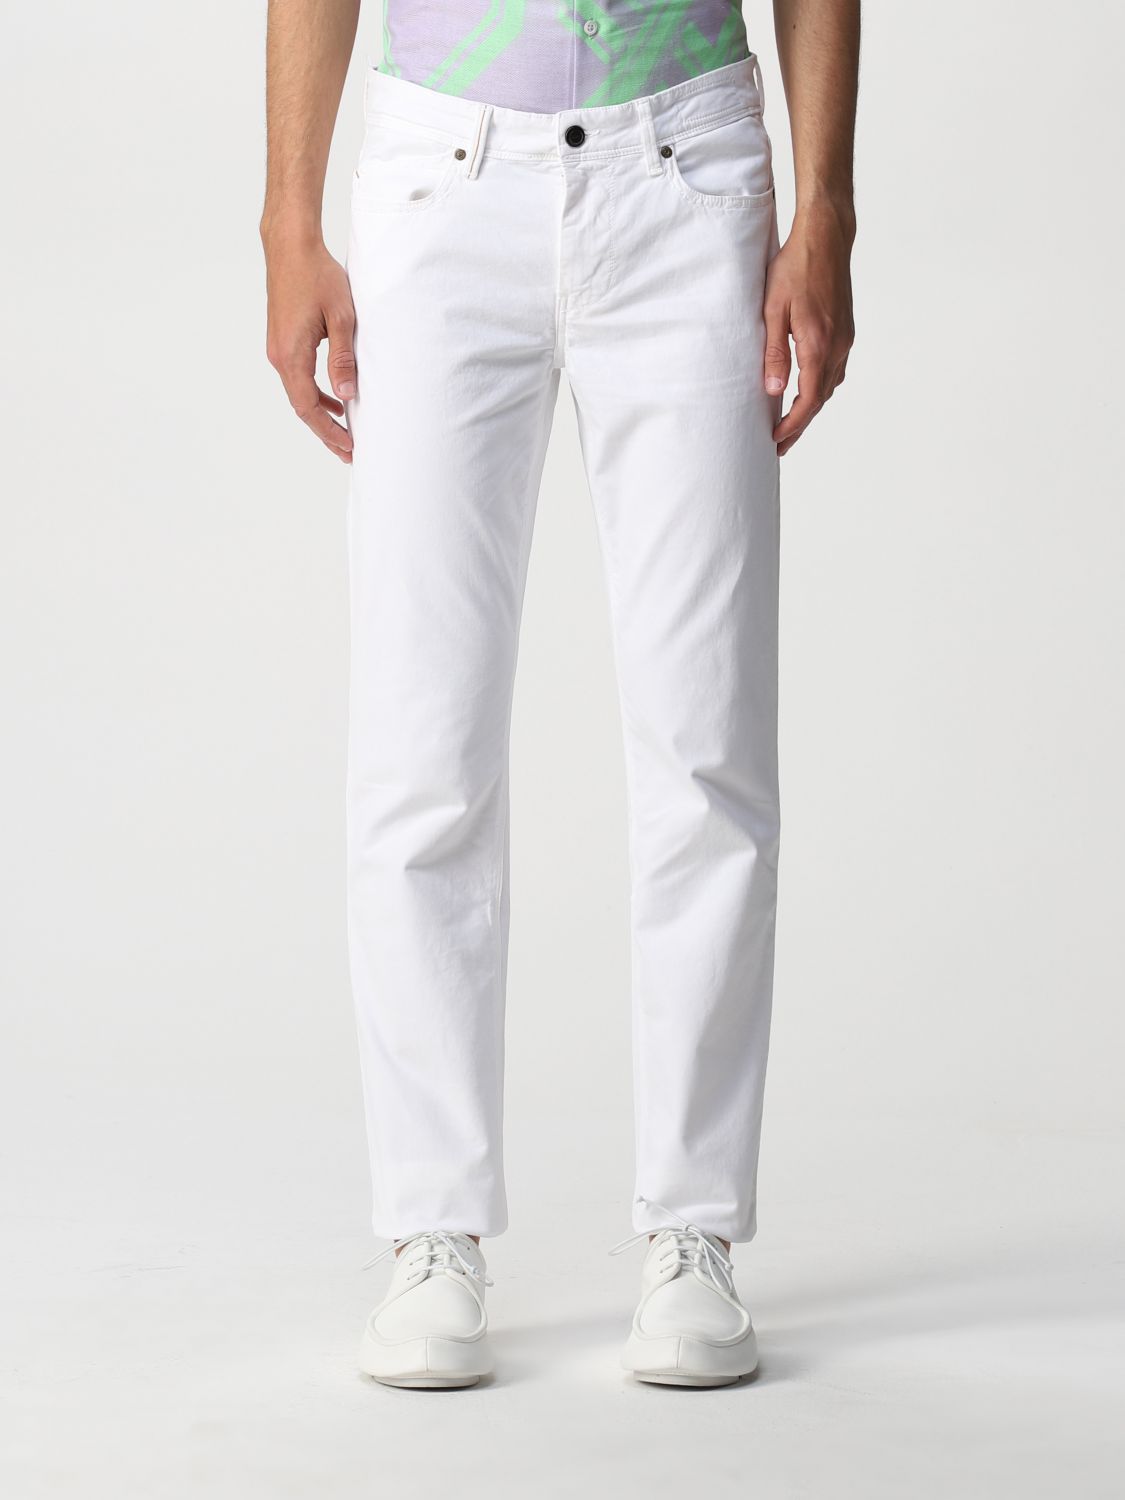 Pantalón Re-Hash: Pantalón hombre Re-hash blanco 1